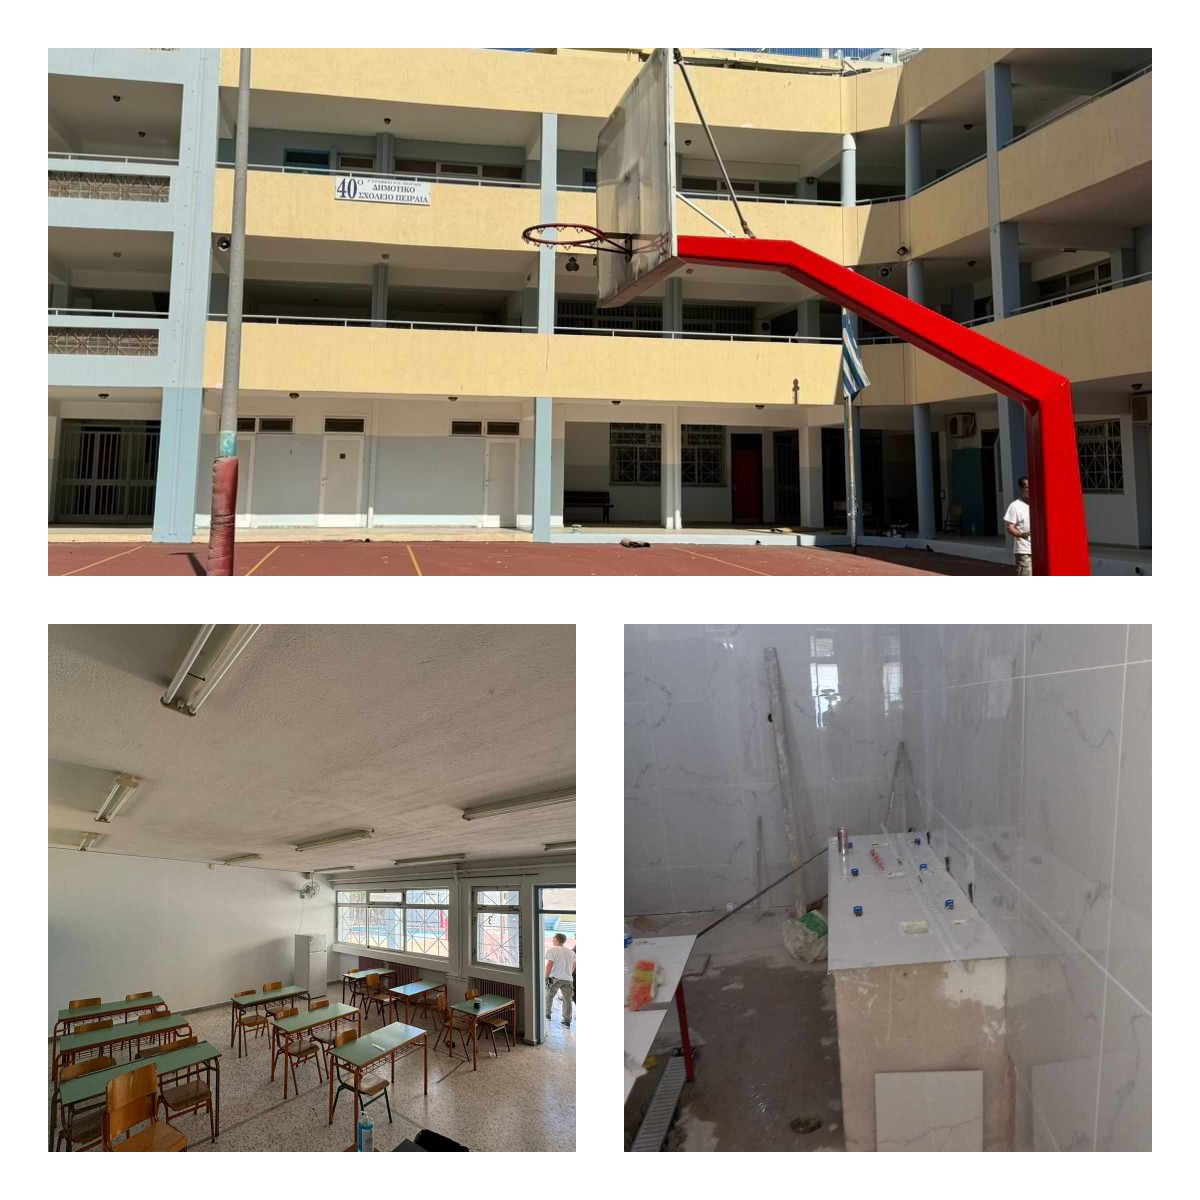 Συνεχίζονται οι εργασίες ανακαίνισης σε σχολεία της πόλης από τον Δήμο Πειραιά